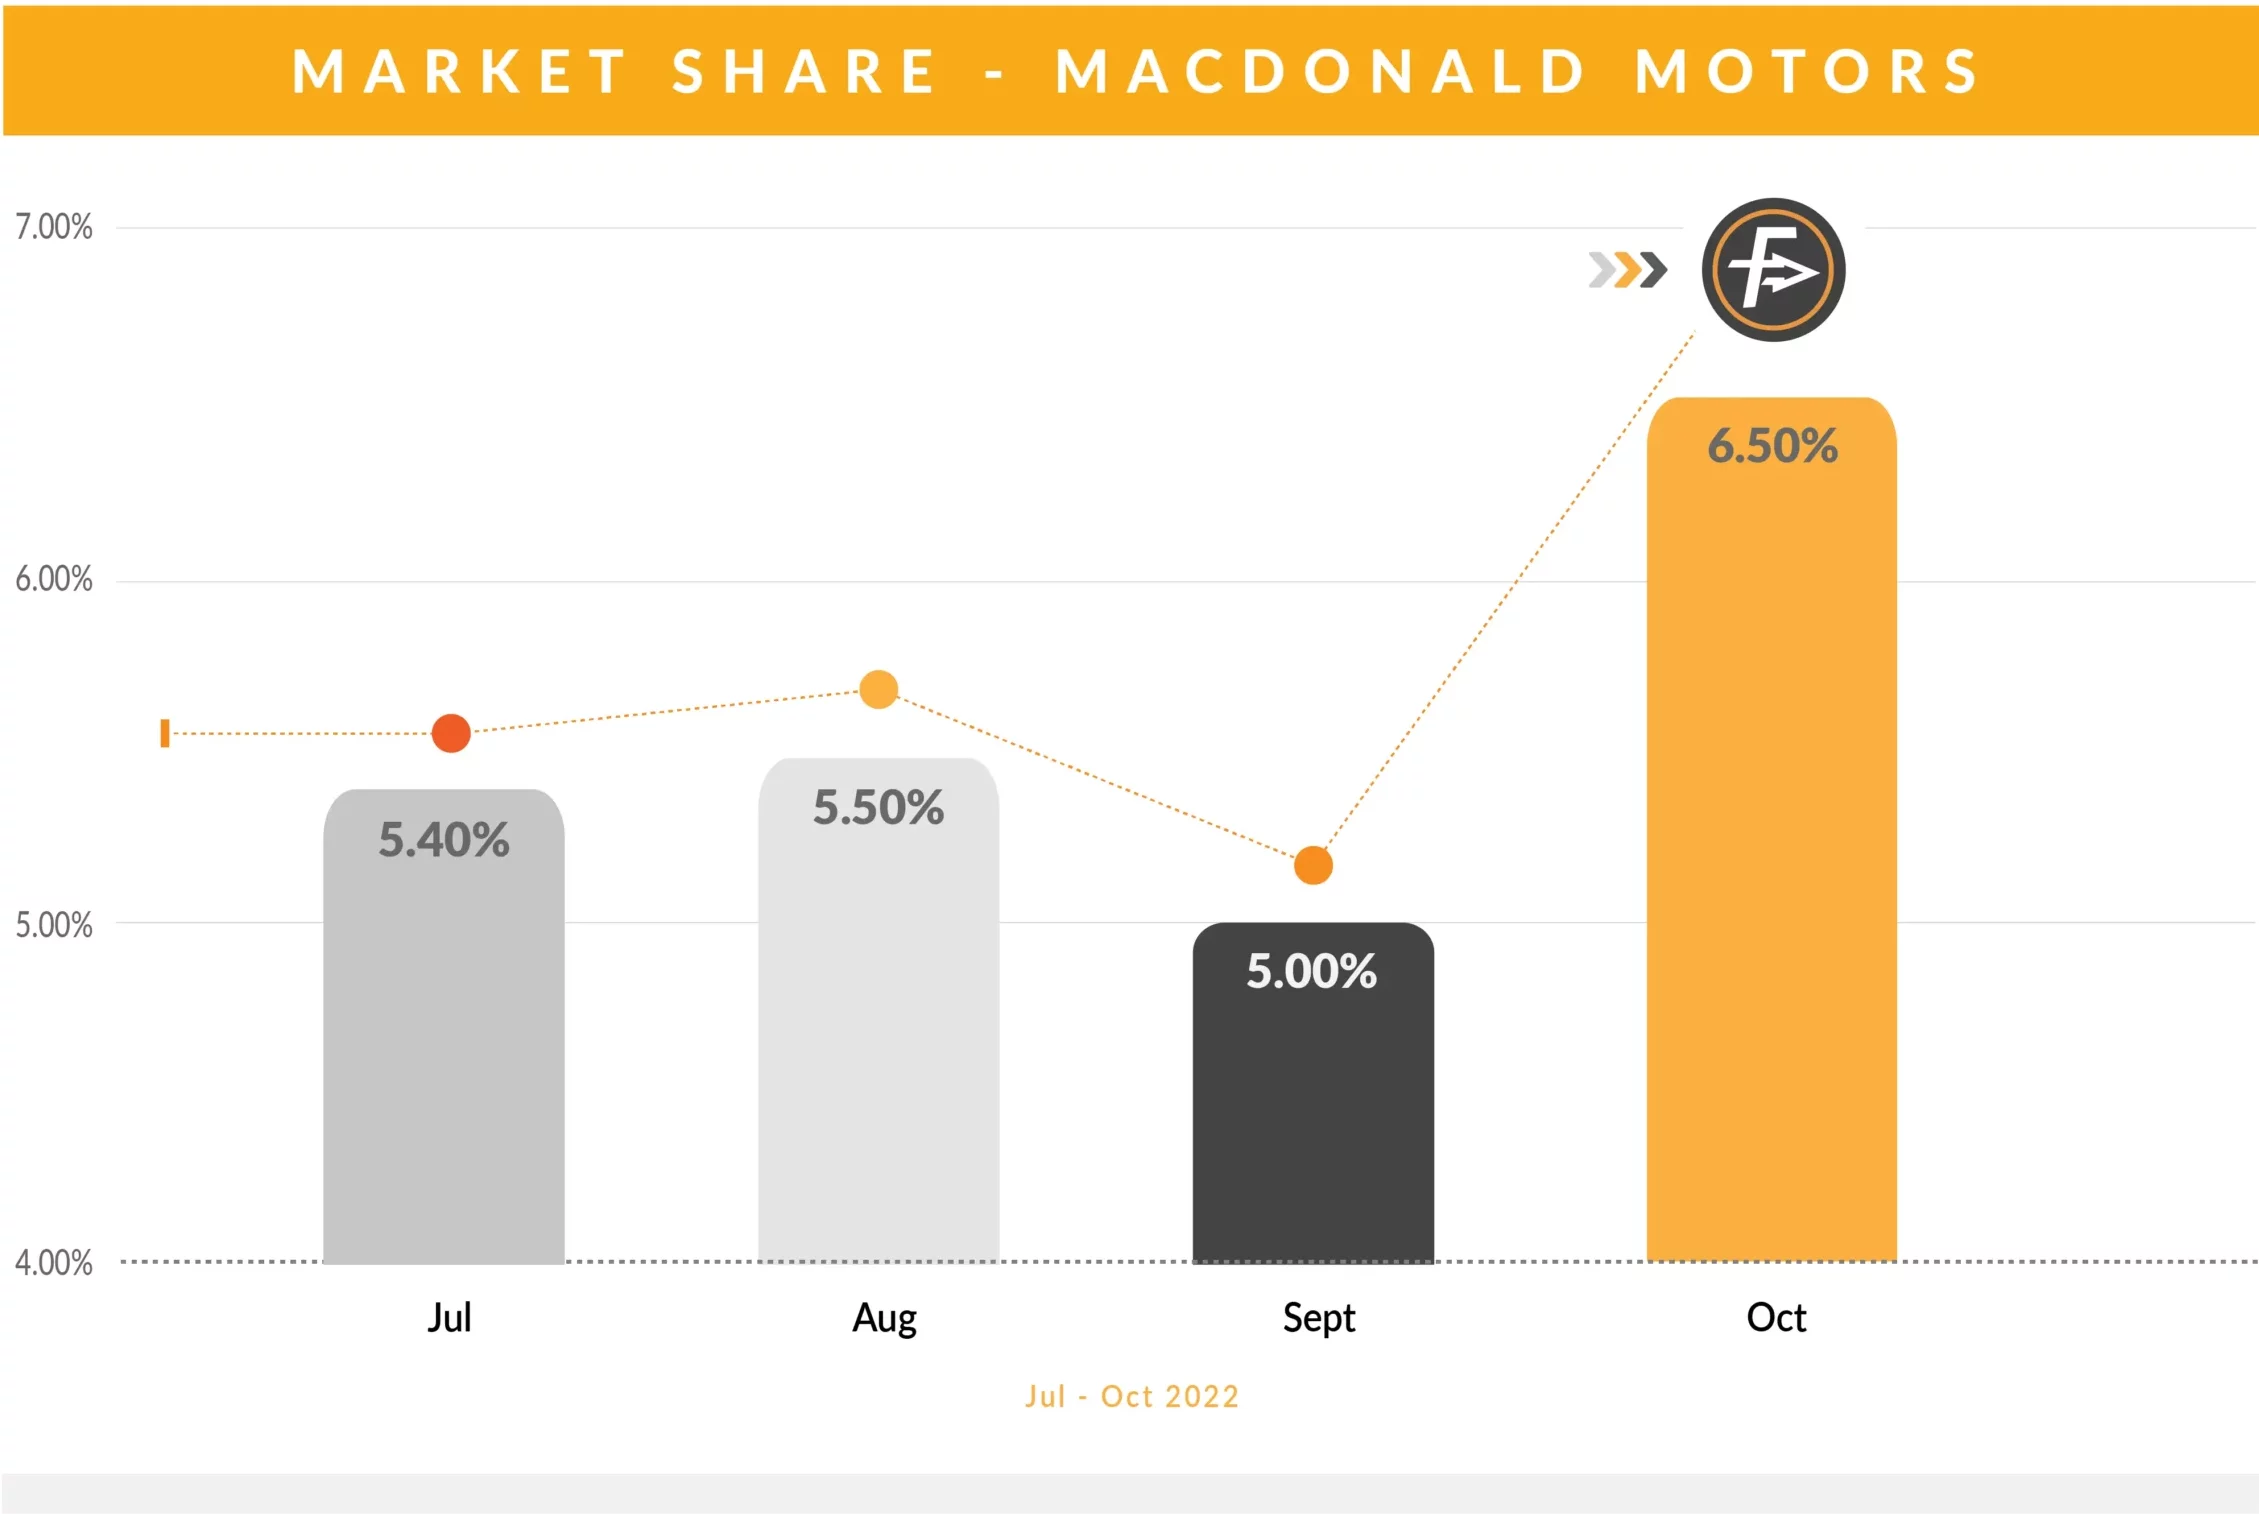 FF Market Share - Macdonald Motors (1)